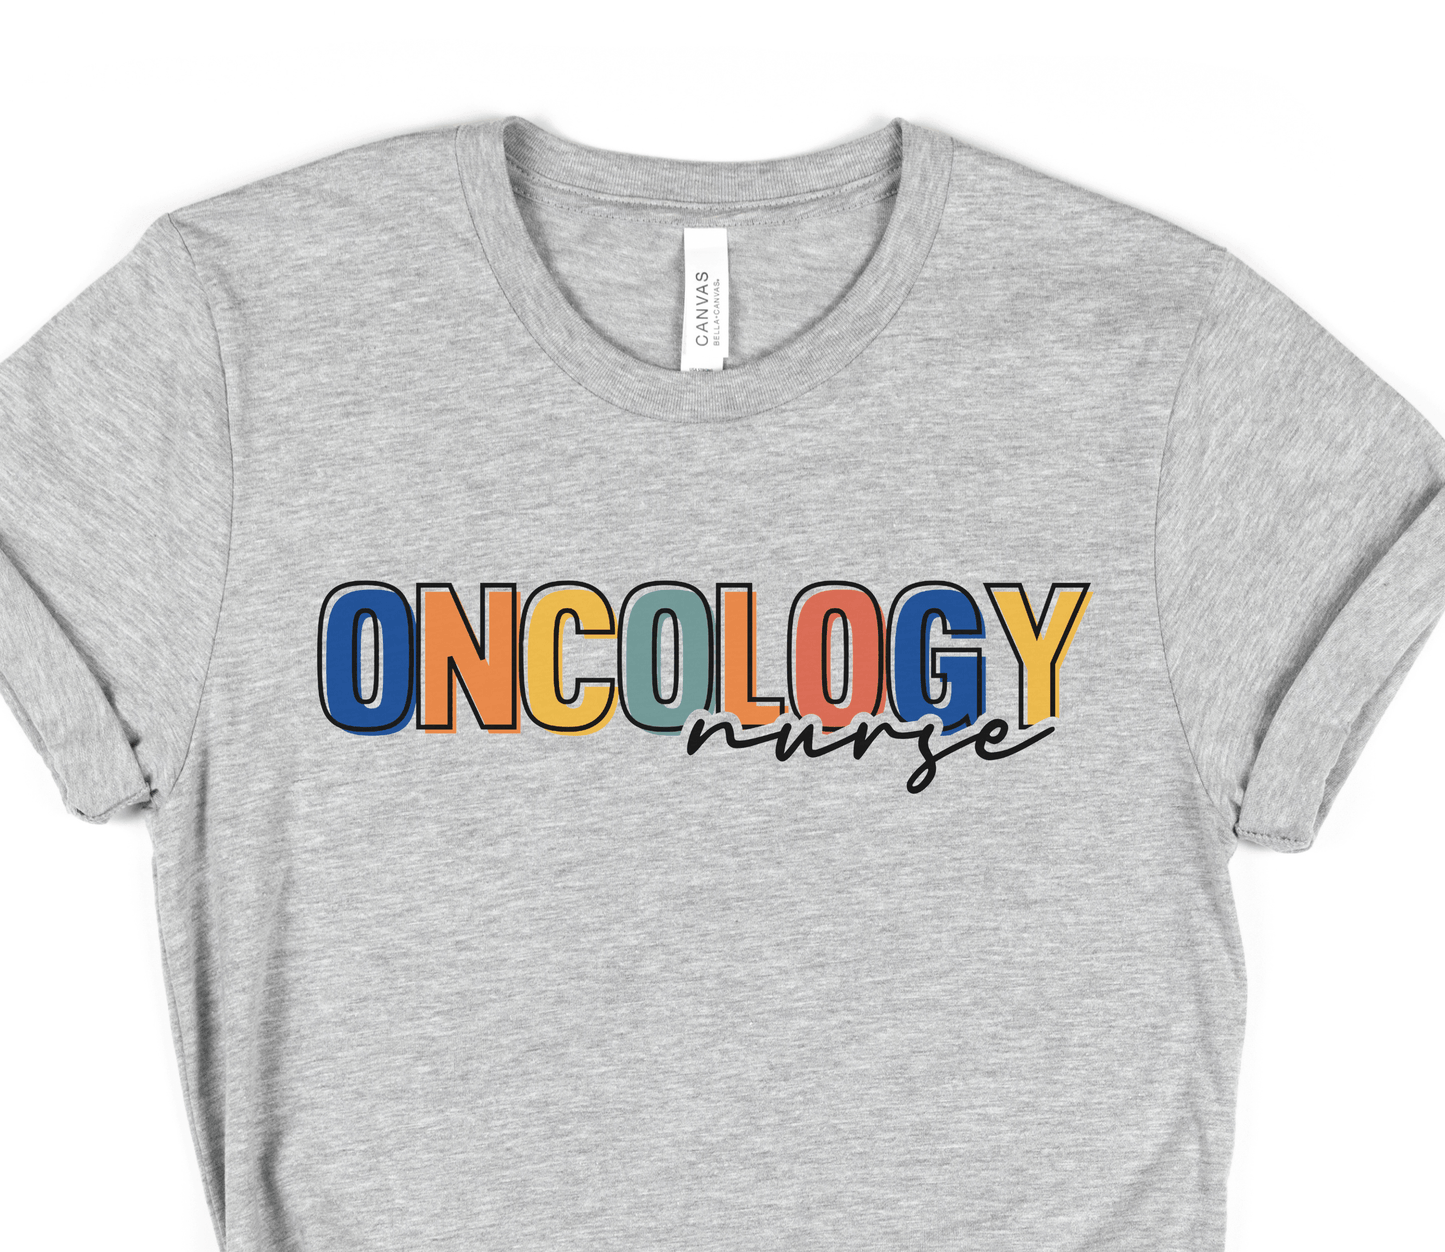 Oncology Nurse Shirt - BentleyBlueCo